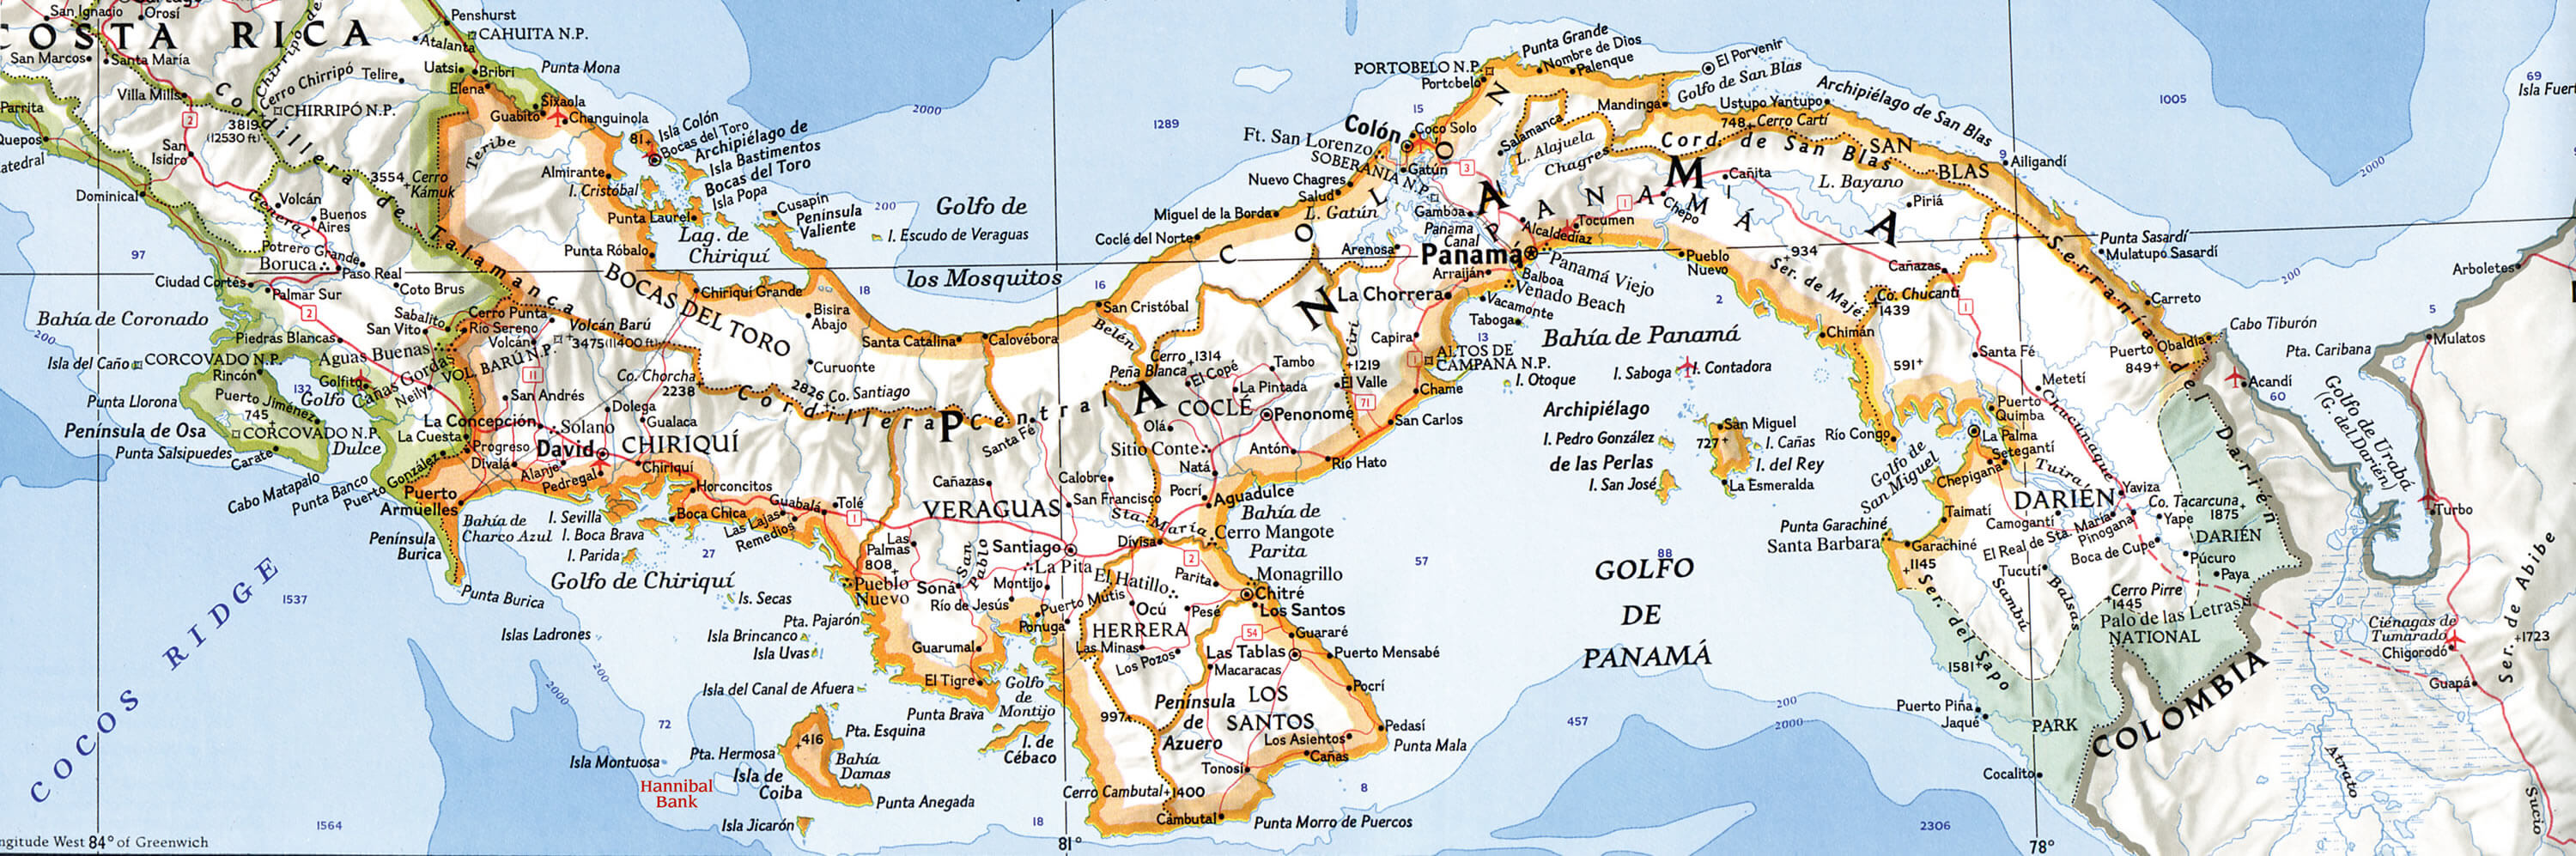 Carte Physique du Panama Towns